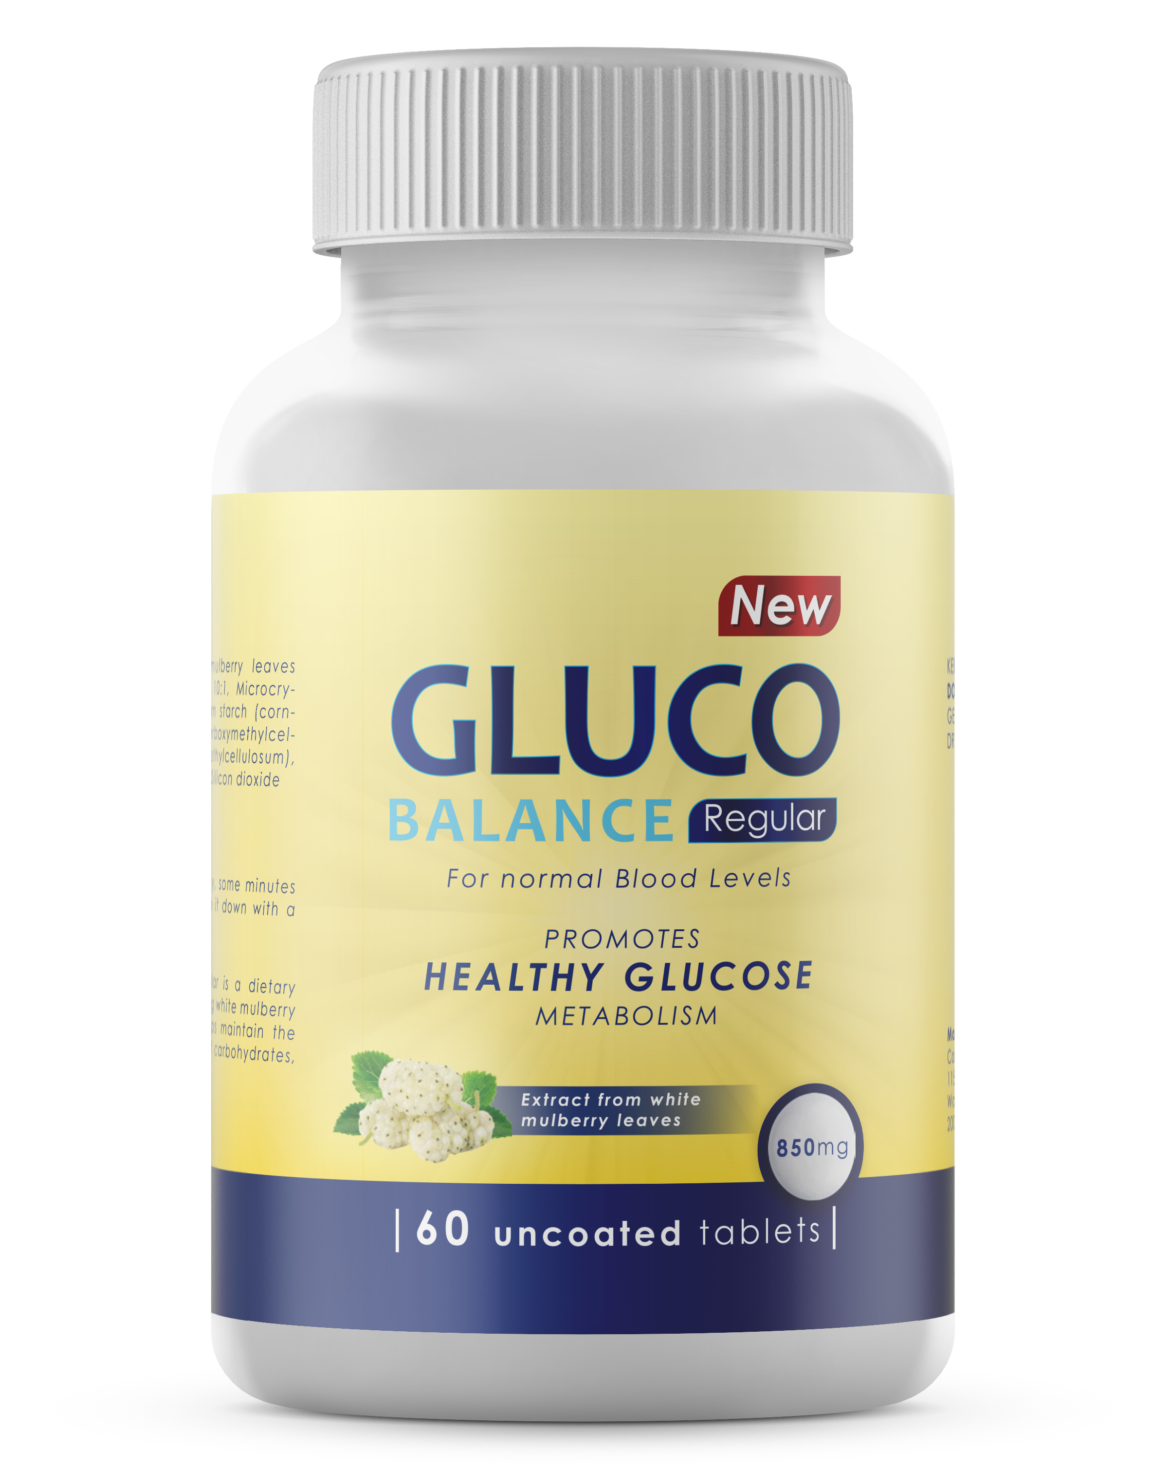 Glucobalance compresse: aiuta a preservare i valori ottimali glicemici? Acquisto, opinioni e recensioni, prezzo